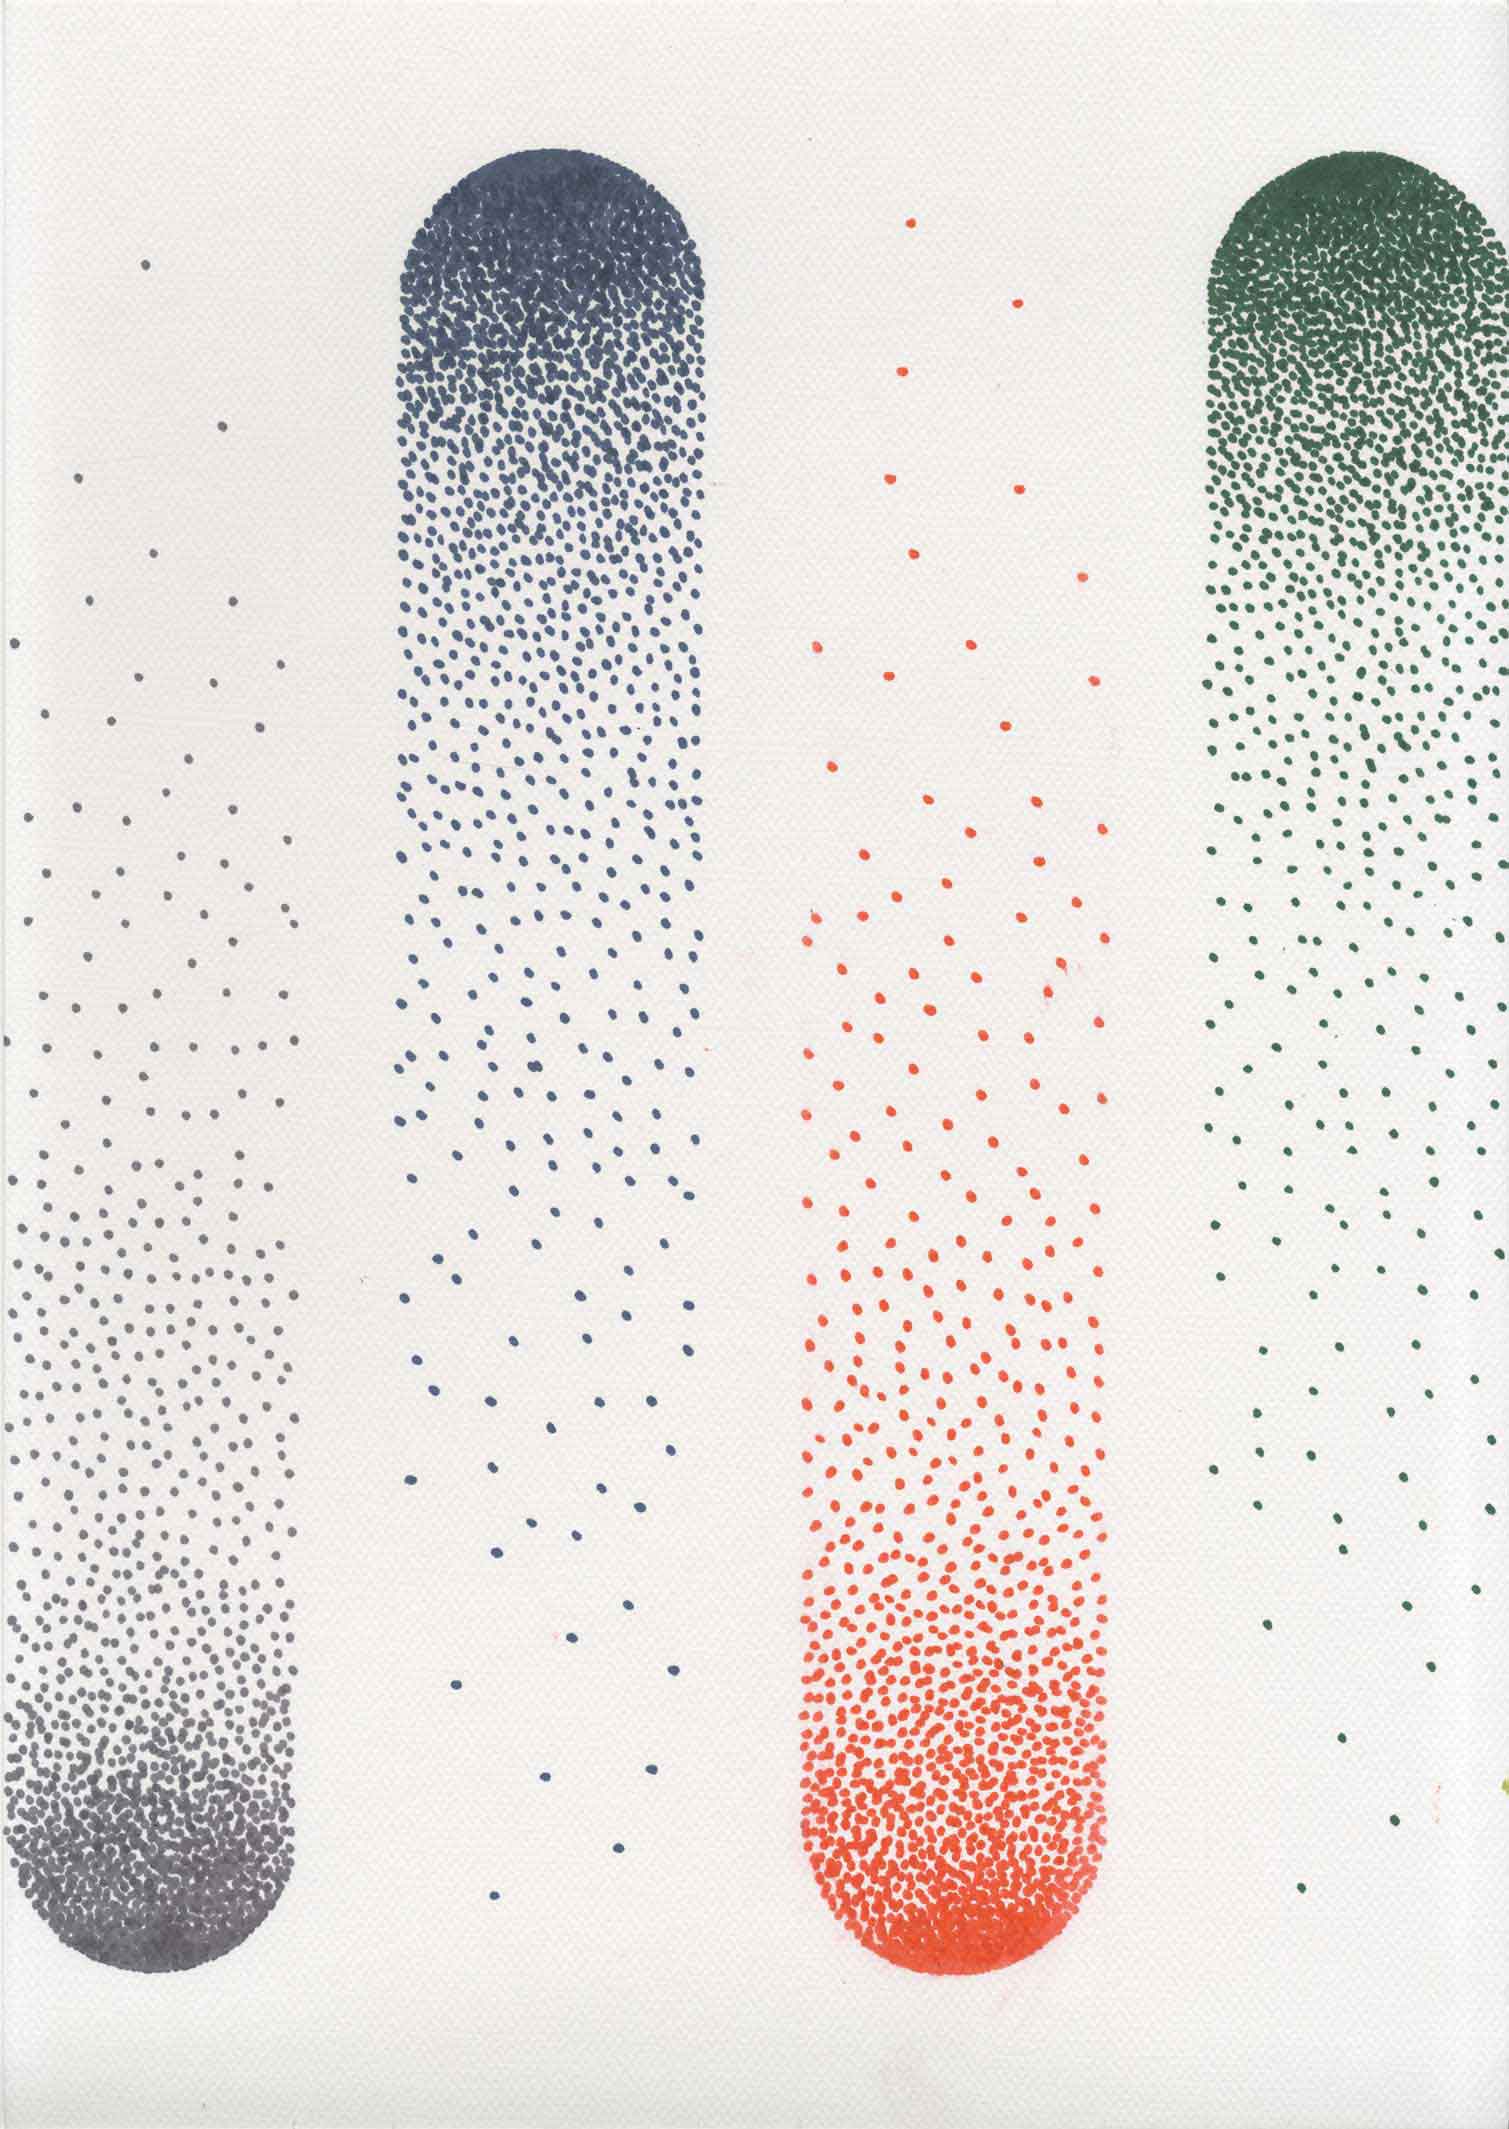 Dots Dots Dots - Série de dessins pointillés au feutre, recherche graphique personnelle.